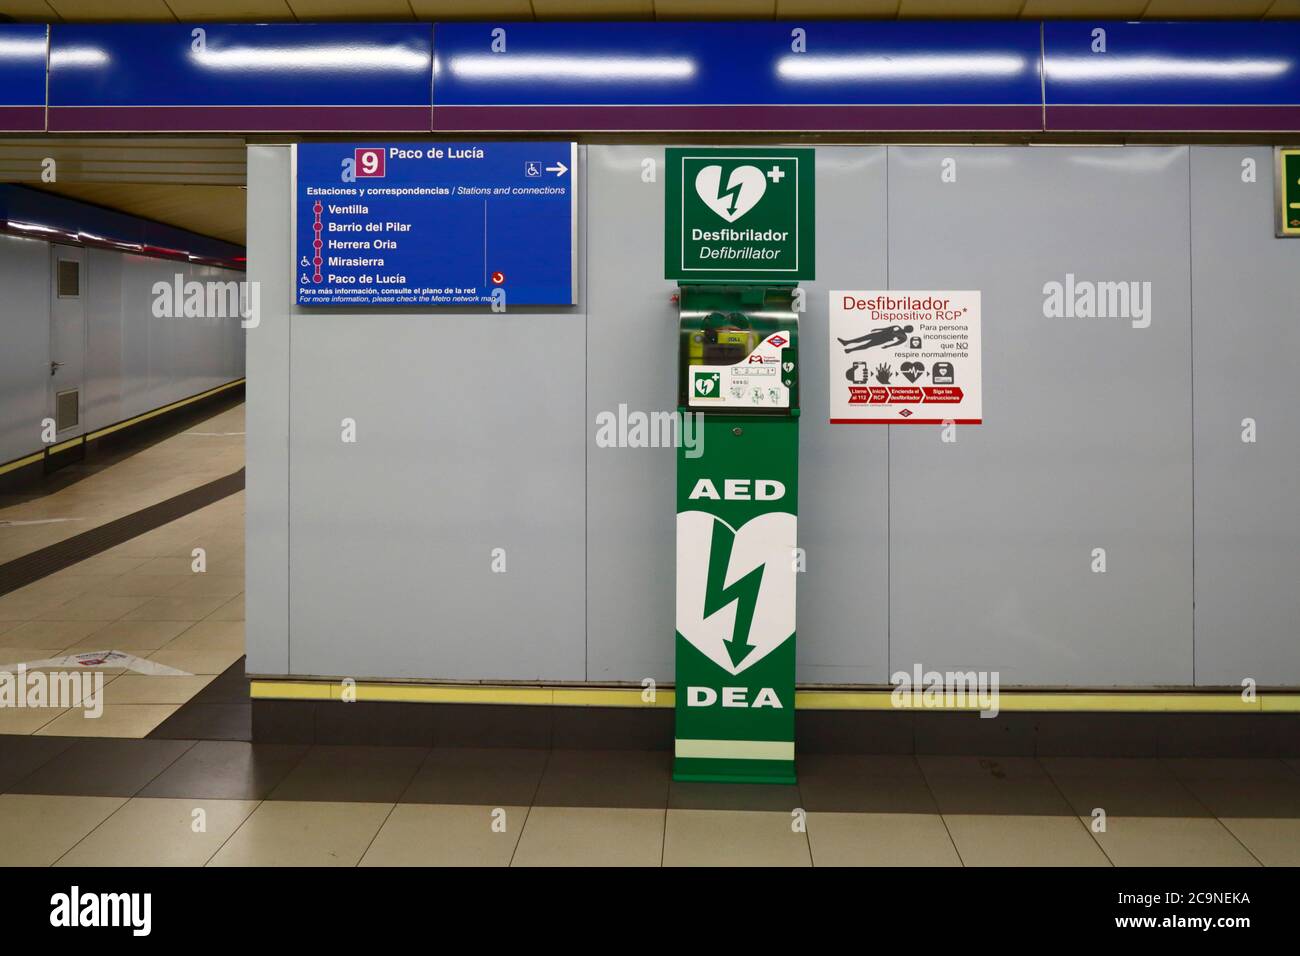 Défibrillateur et équipement de premiers soins à la station de secours de la station de métro Paco de Lucia ligne 9, Madrid, Espagne Banque D'Images